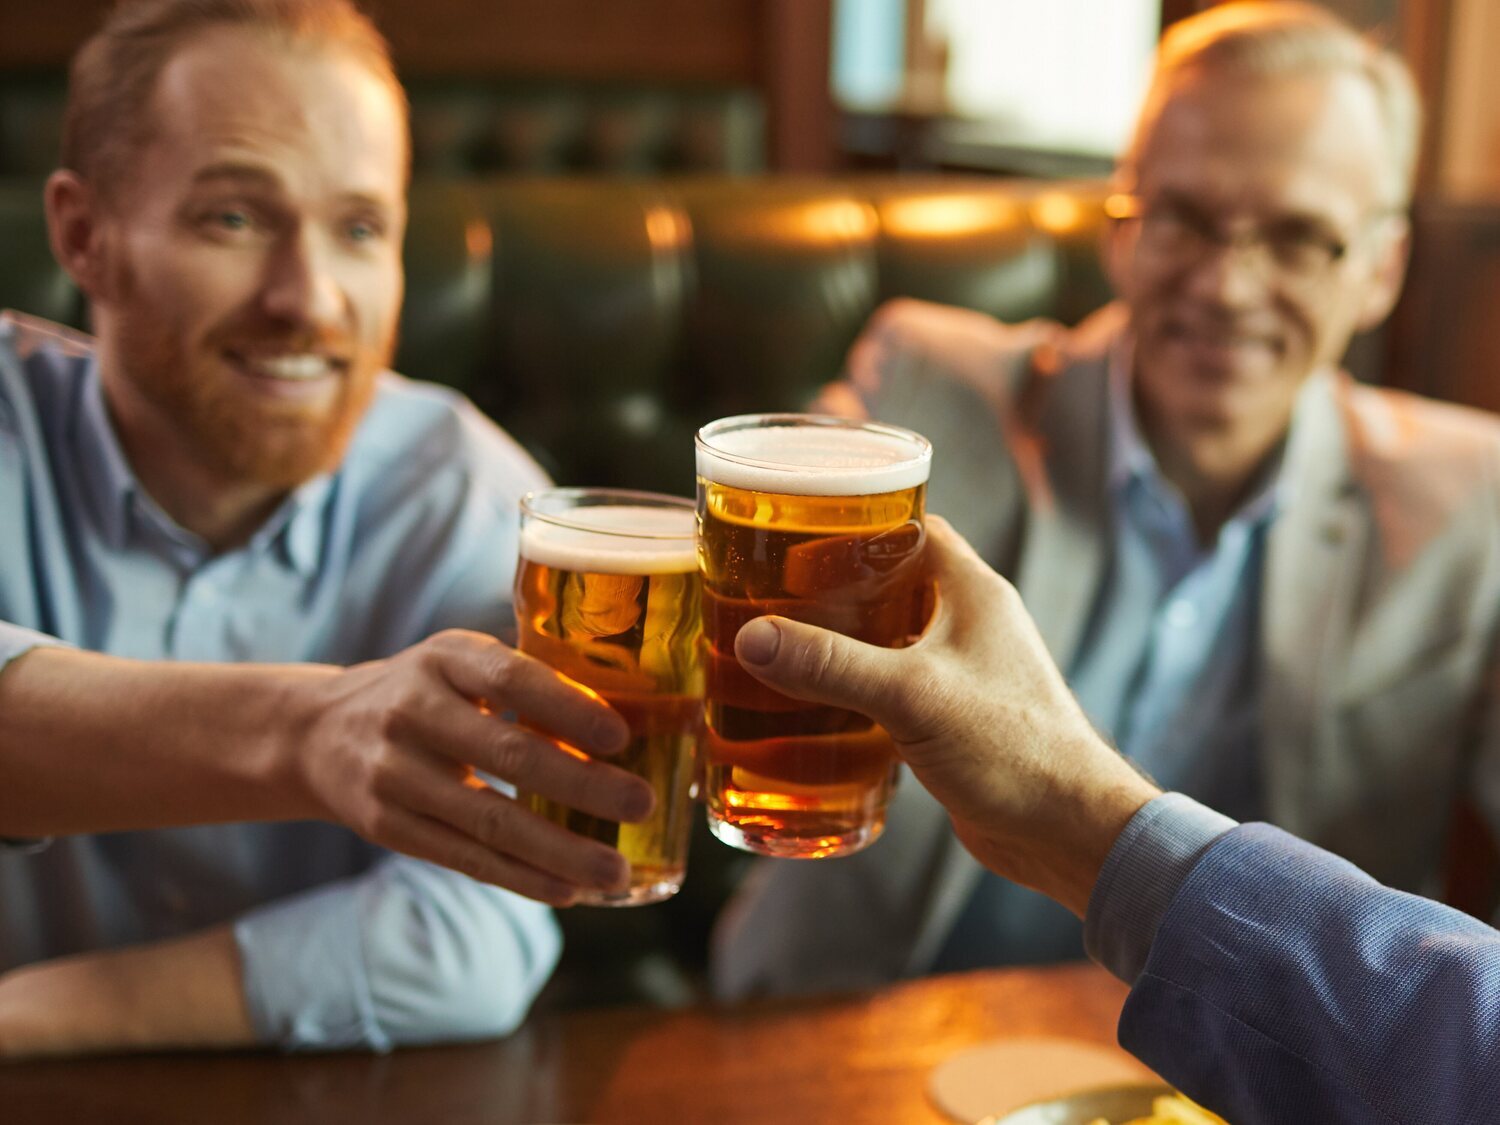 El síntoma que puede alertar de cáncer al tomar un sorbo de cerveza o comer un bombón